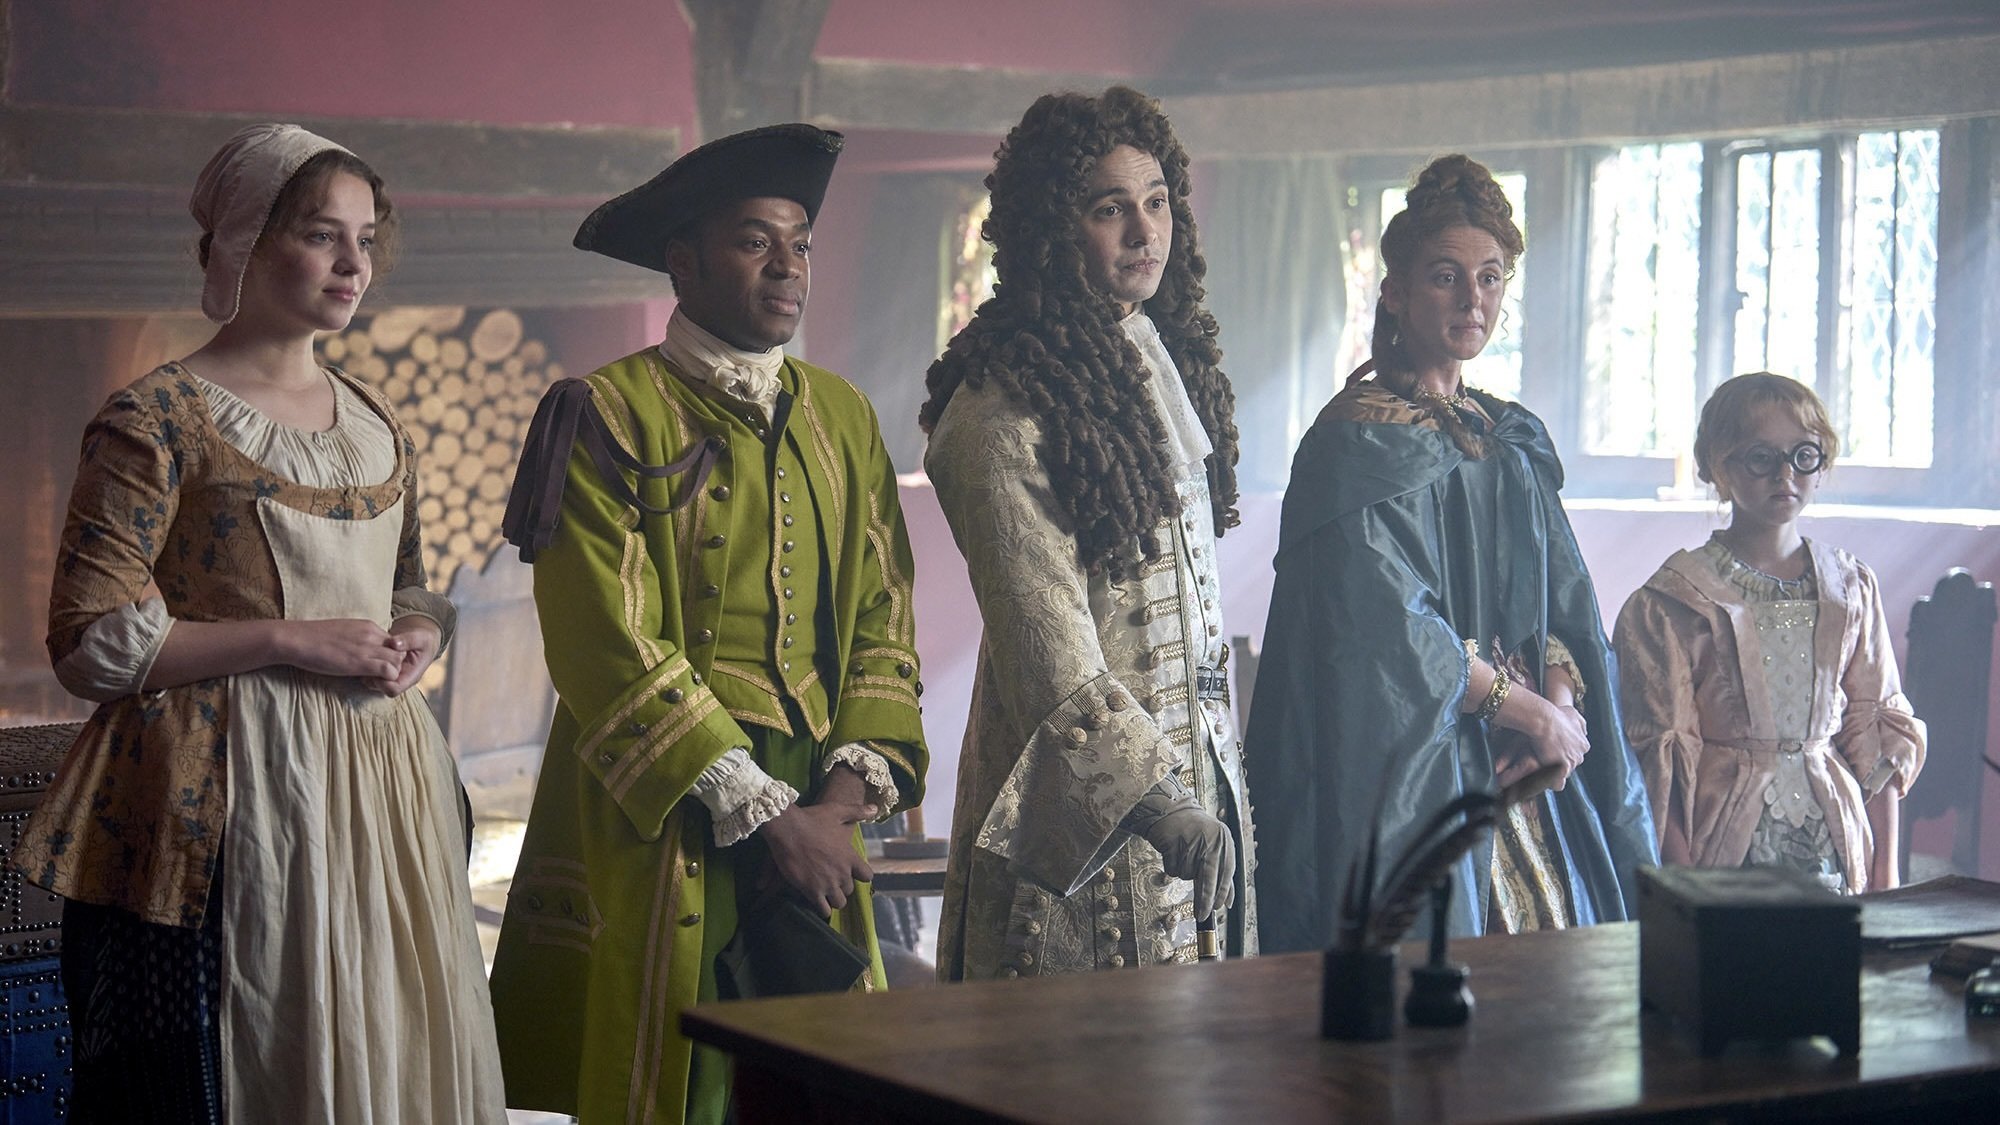 Cinq jeunes hommes et femmes vêtus de vêtements anglais élaborés du XVIIIe siècle s'installent dans une auberge.